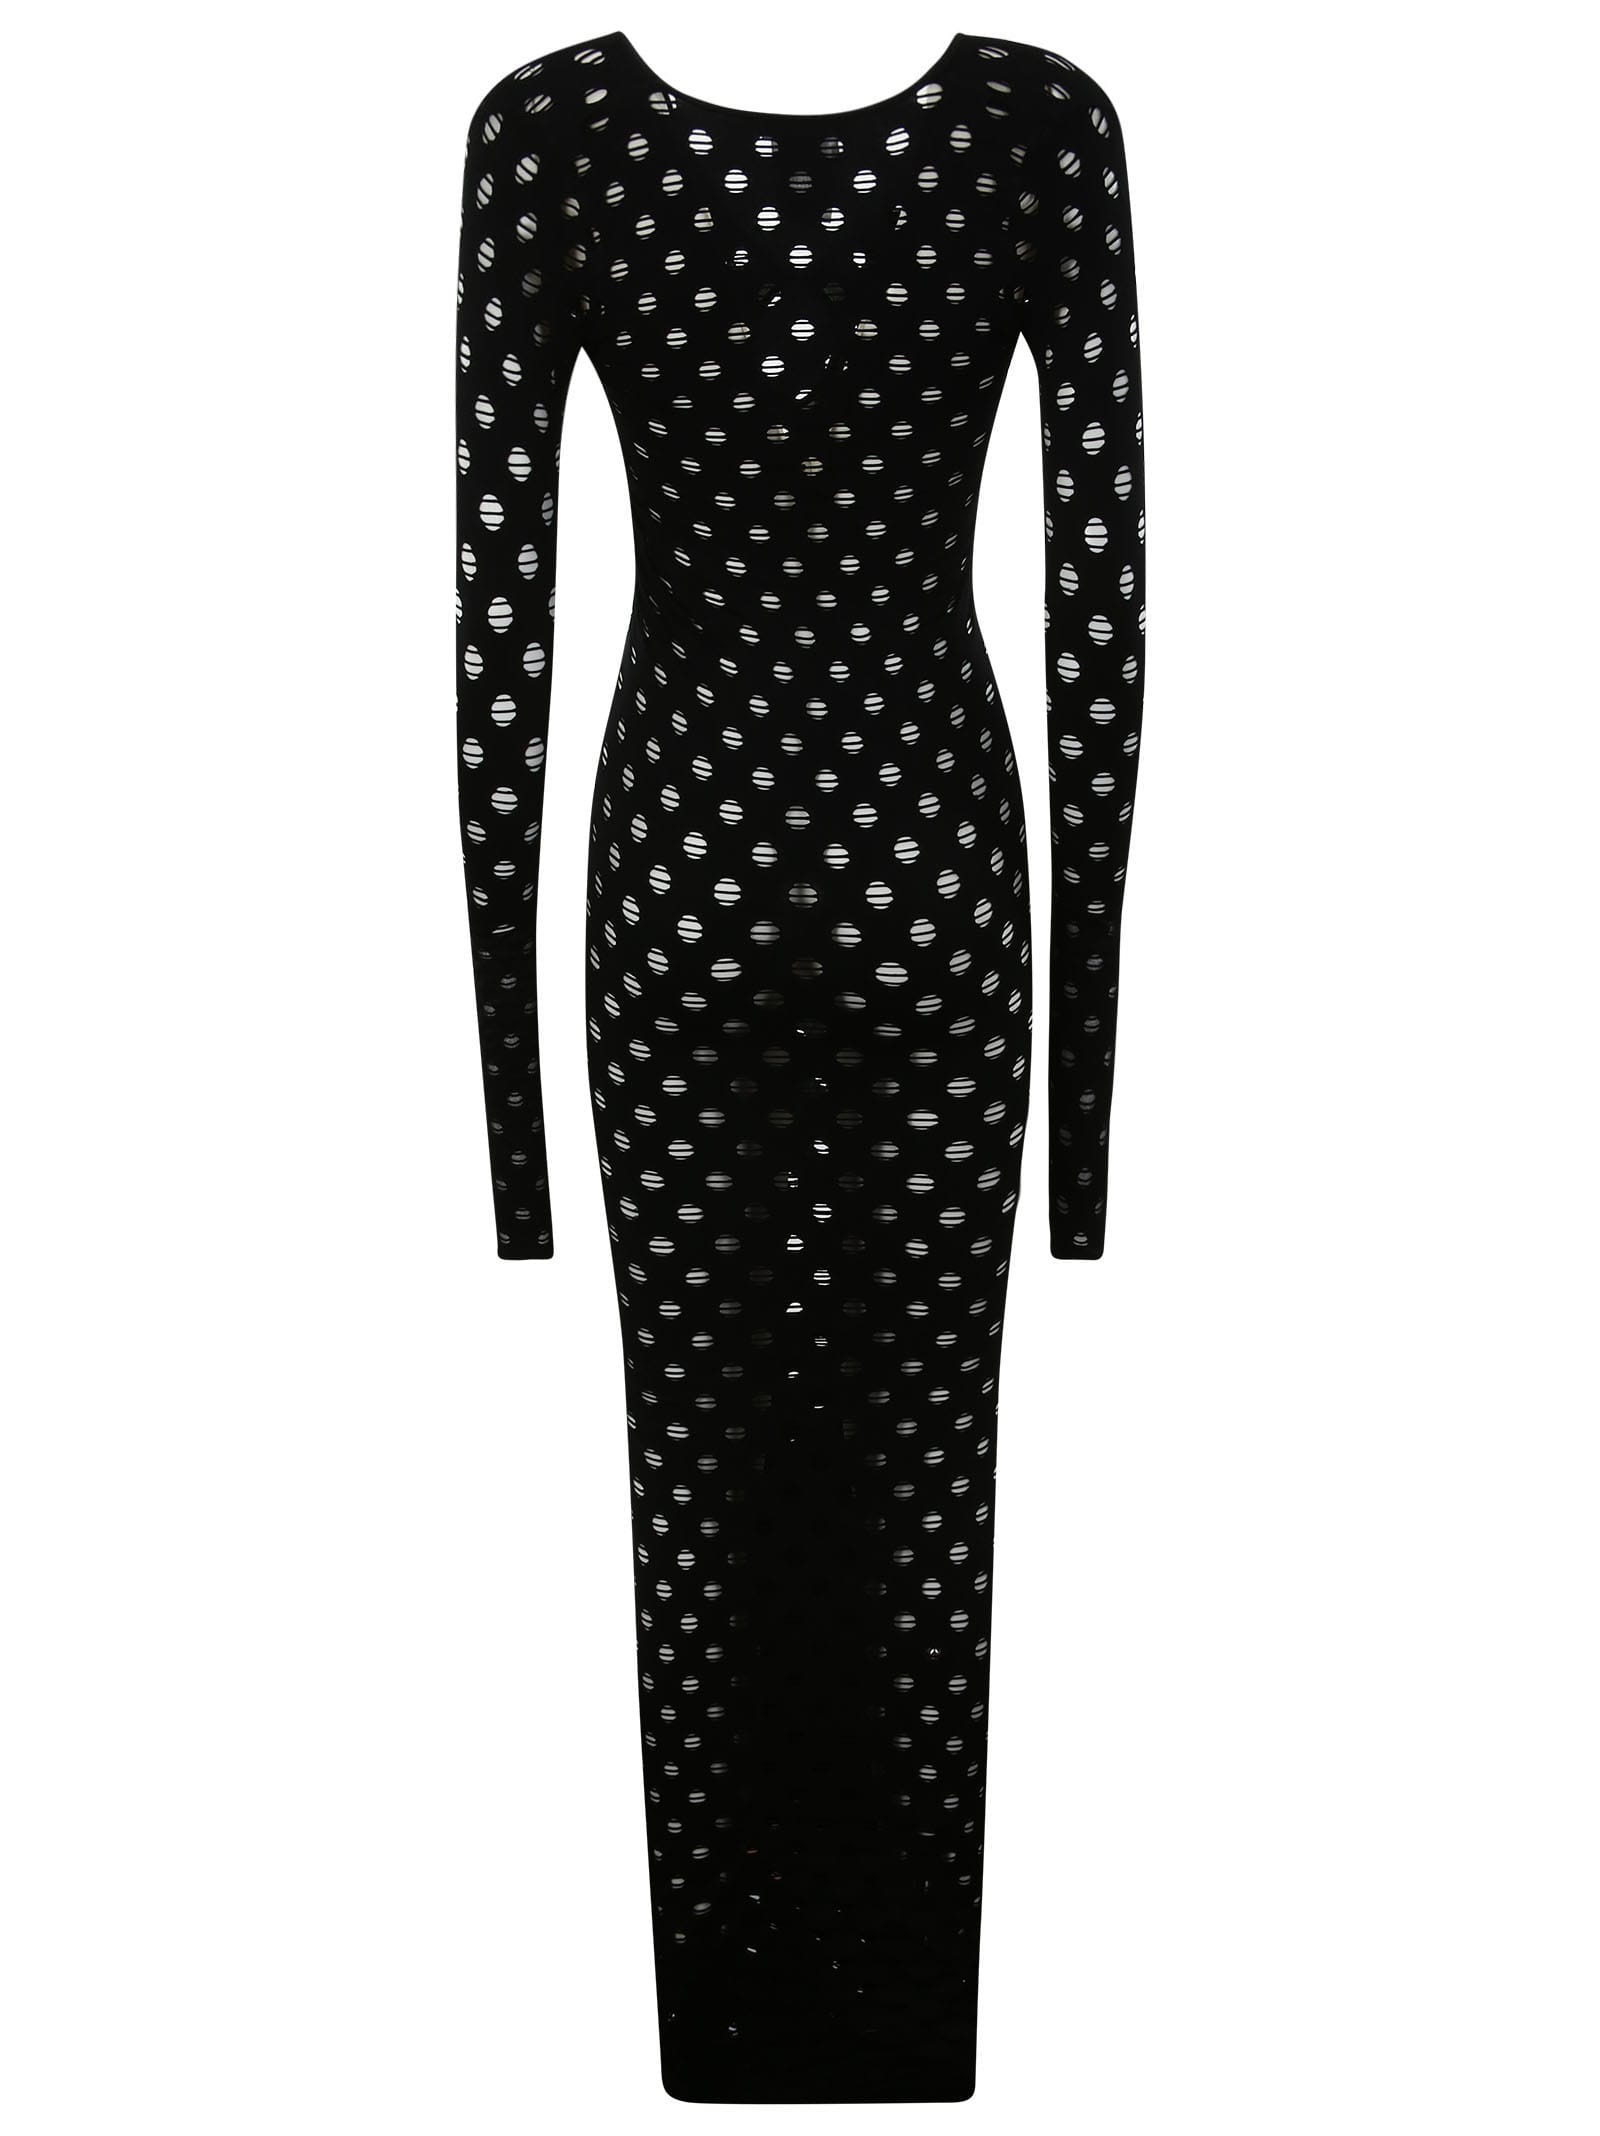 Maisie Wilen Black Perforated Midi Dress | ModeSens